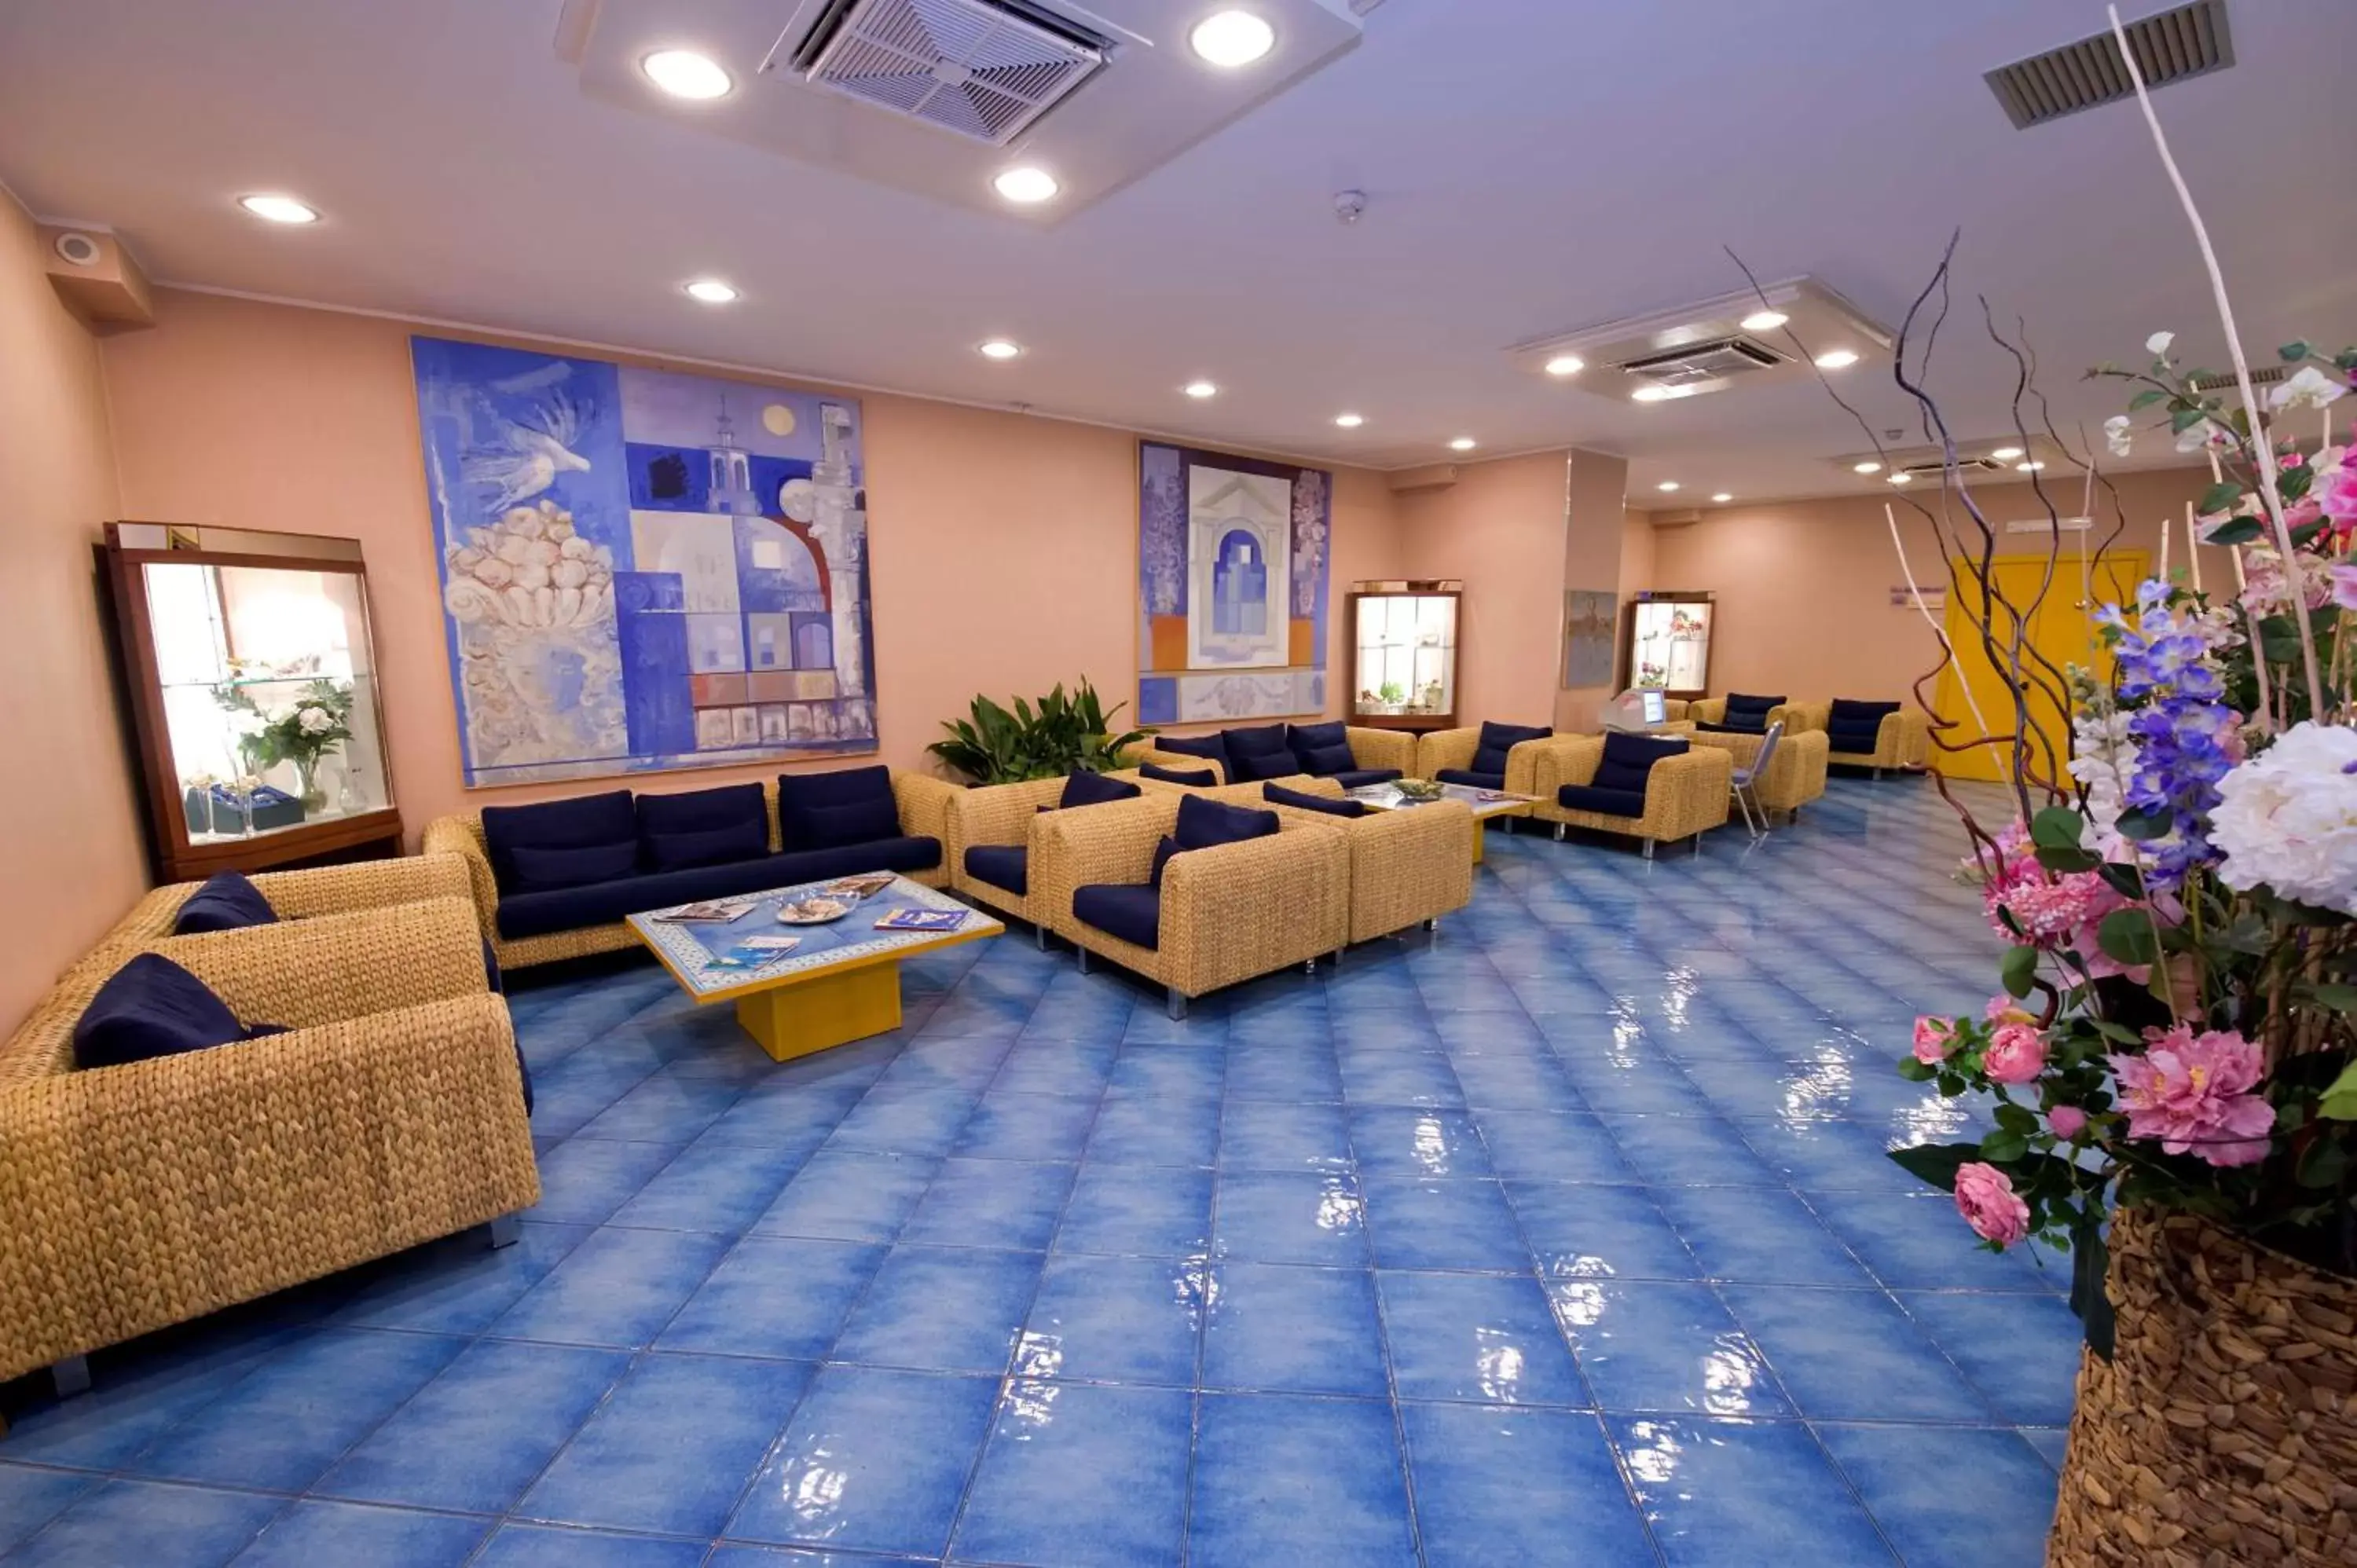 Lobby or reception, Lobby/Reception in Best Western Hotel Mediterraneo